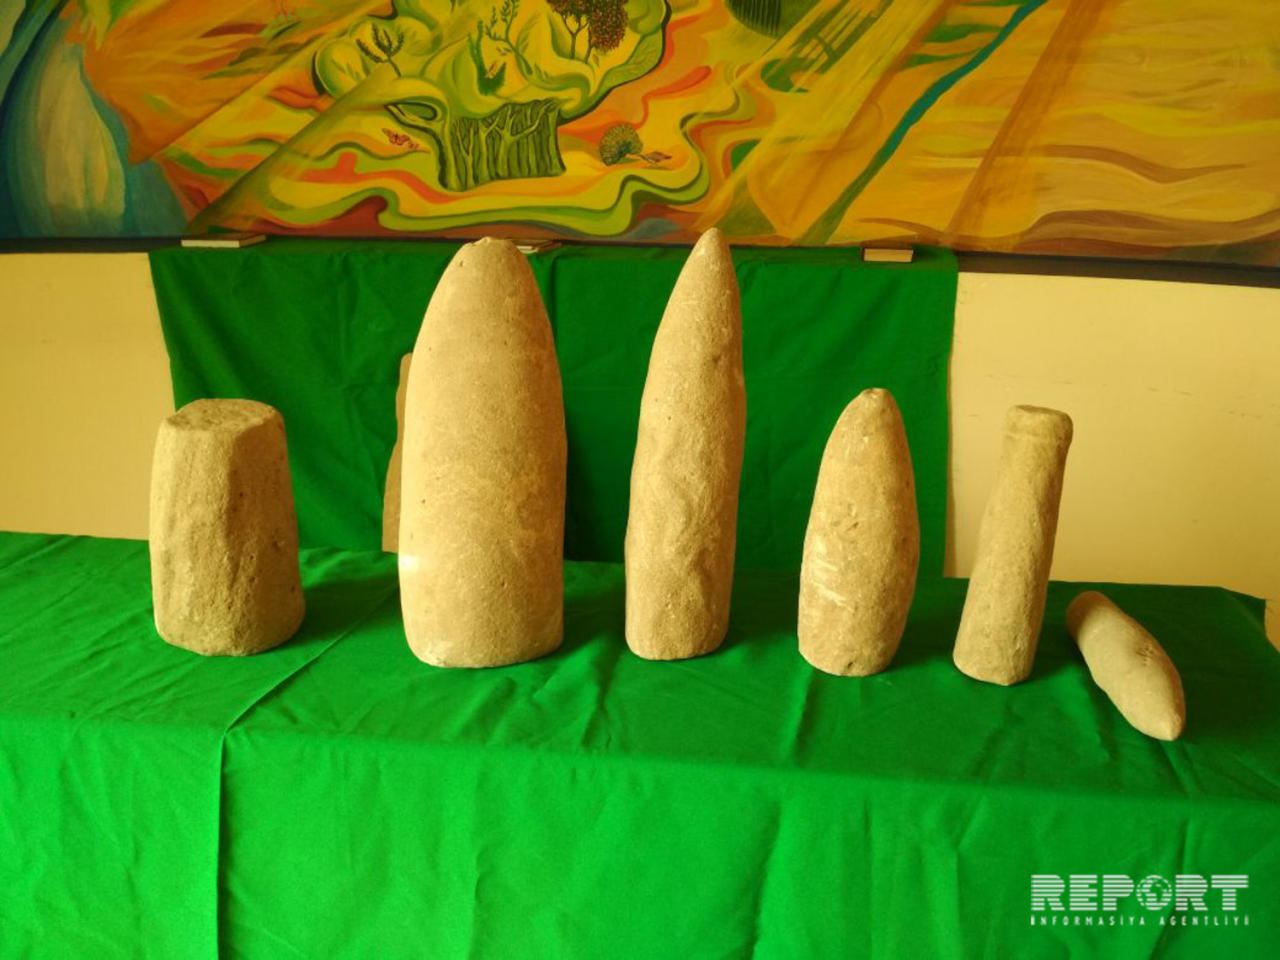 Ancient stones found in Fuzuli [PHOTO]